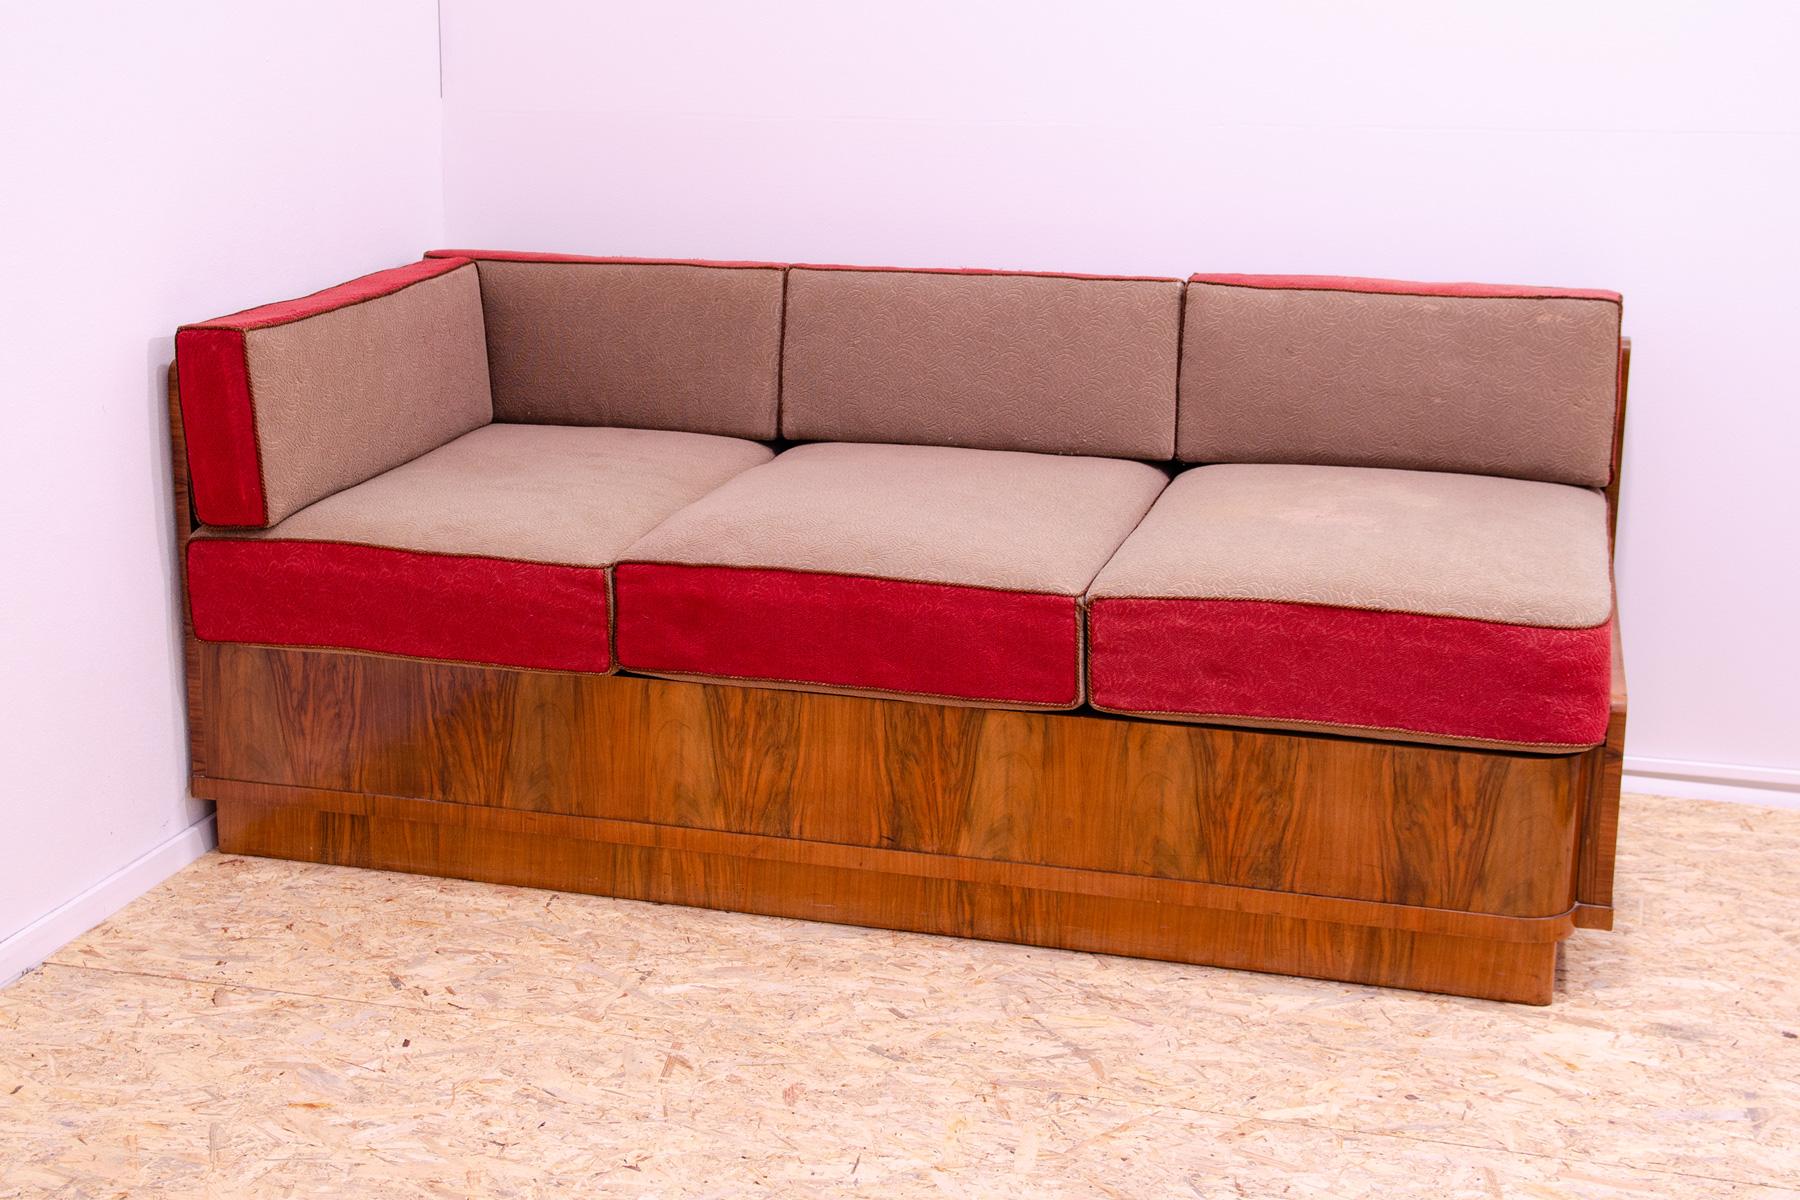 Dieses Sofa im ART DECO-Stil mit Stauraum wurde in den 1930er Jahren in der damaligen Tschechoslowakei entworfen und hergestellt.
Dieses schlichte Design passt in den Kontext der Designentwicklung in der Tschechoslowakei zwischen den 1930er und